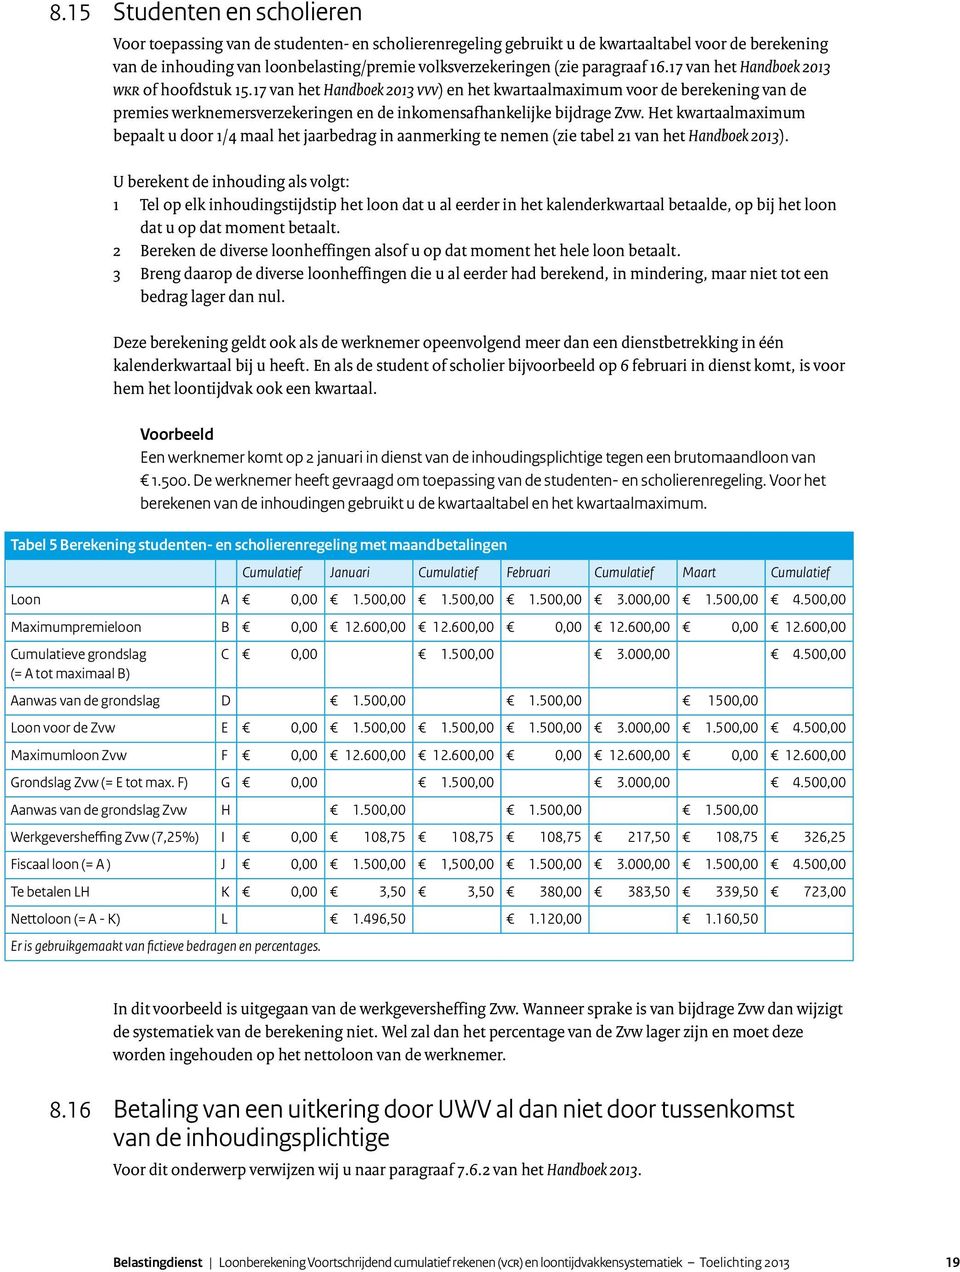 17 van het Handboek 2013 VVV) en het kwartaalmaximum voor de berekening van de premies werknemersverzekeringen en de inkomensafhankelijke bijdrage Zvw.